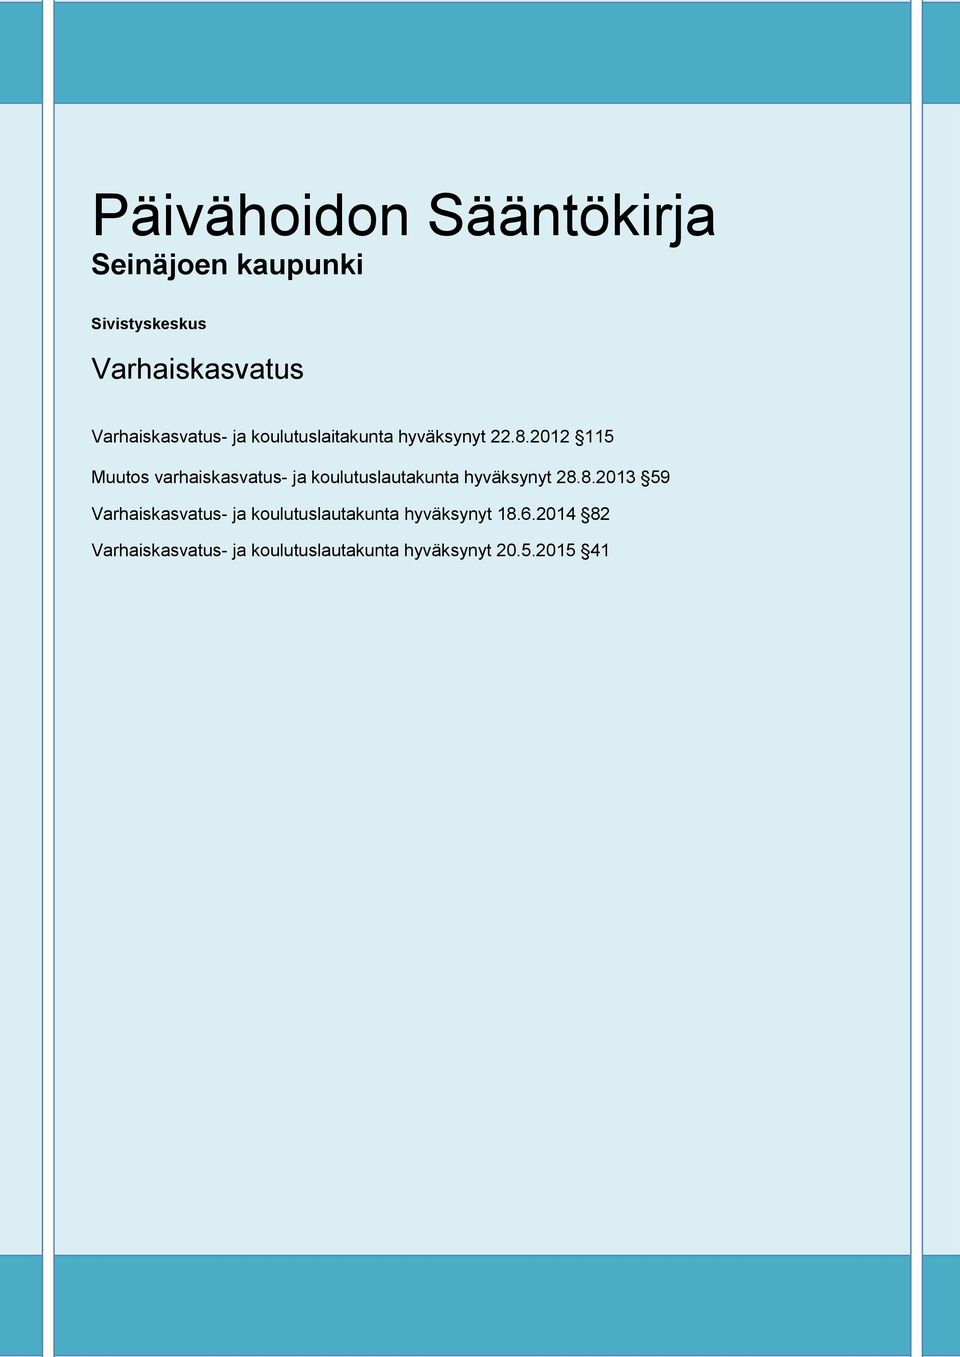 2012 115 Muutos varhaiskasvatus- ja koulutuslautakunta hyväksynyt 28.